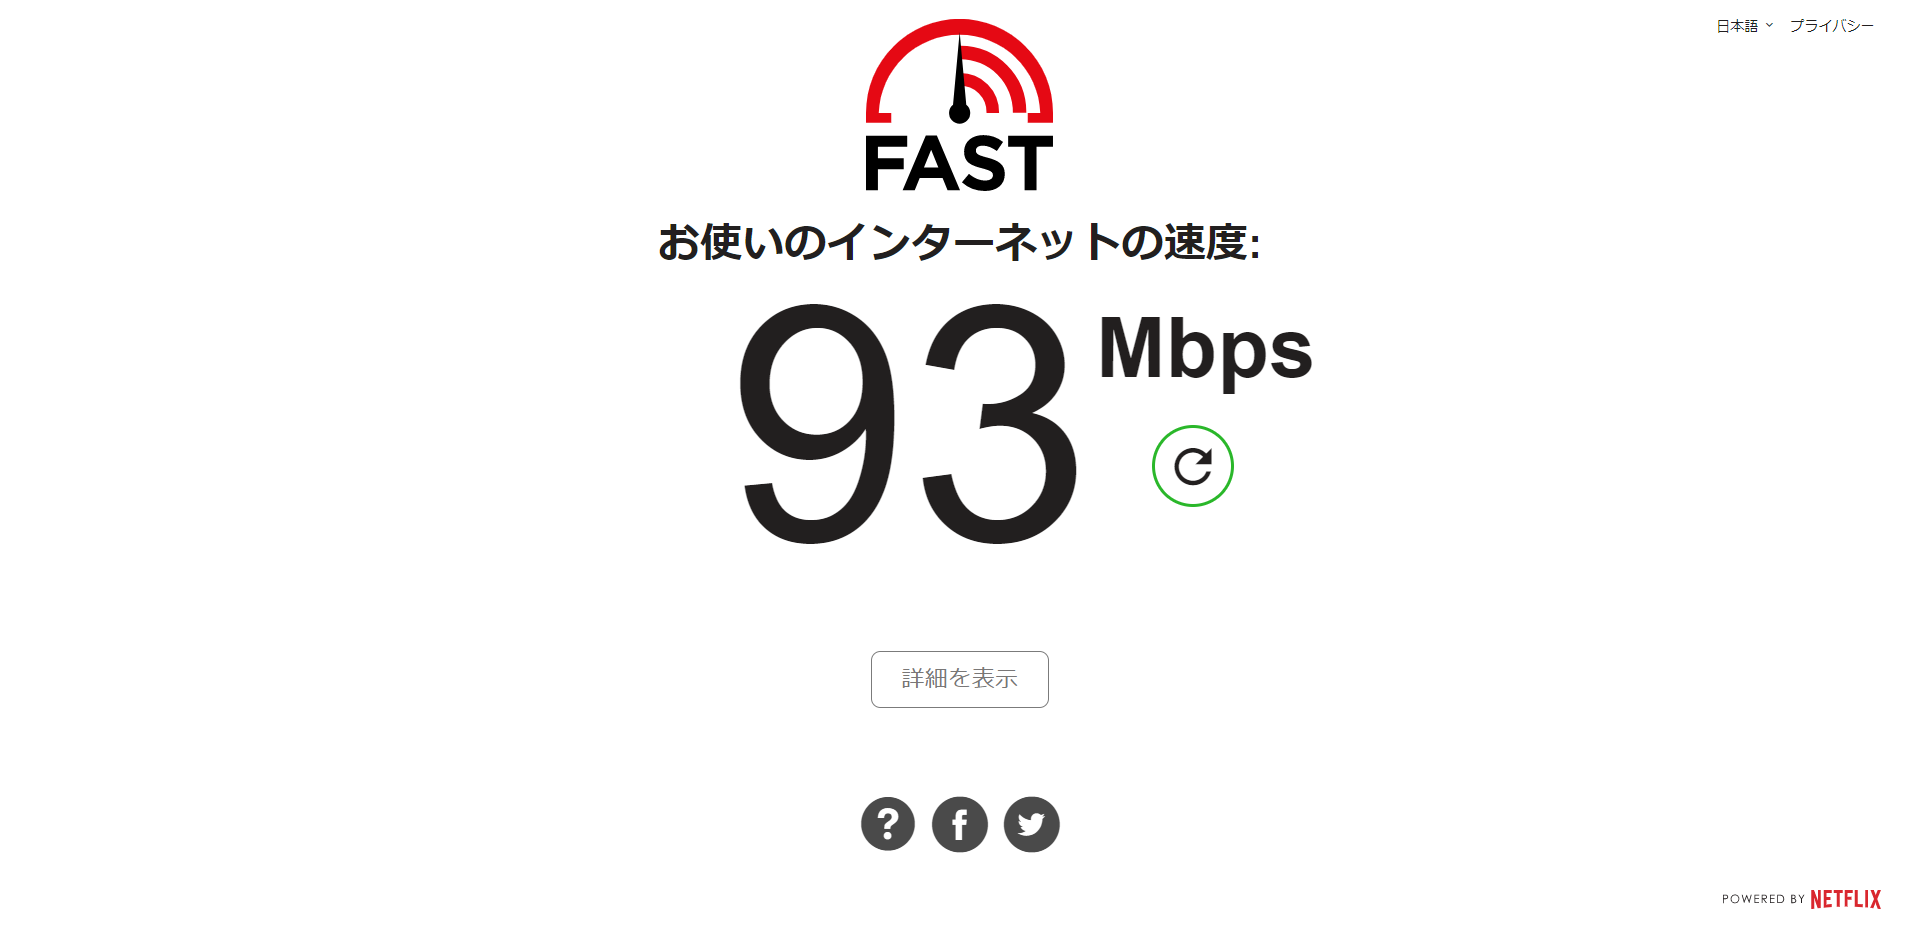 「Fast.com」によるインターネット回線の速度テスト画面キャプチャ